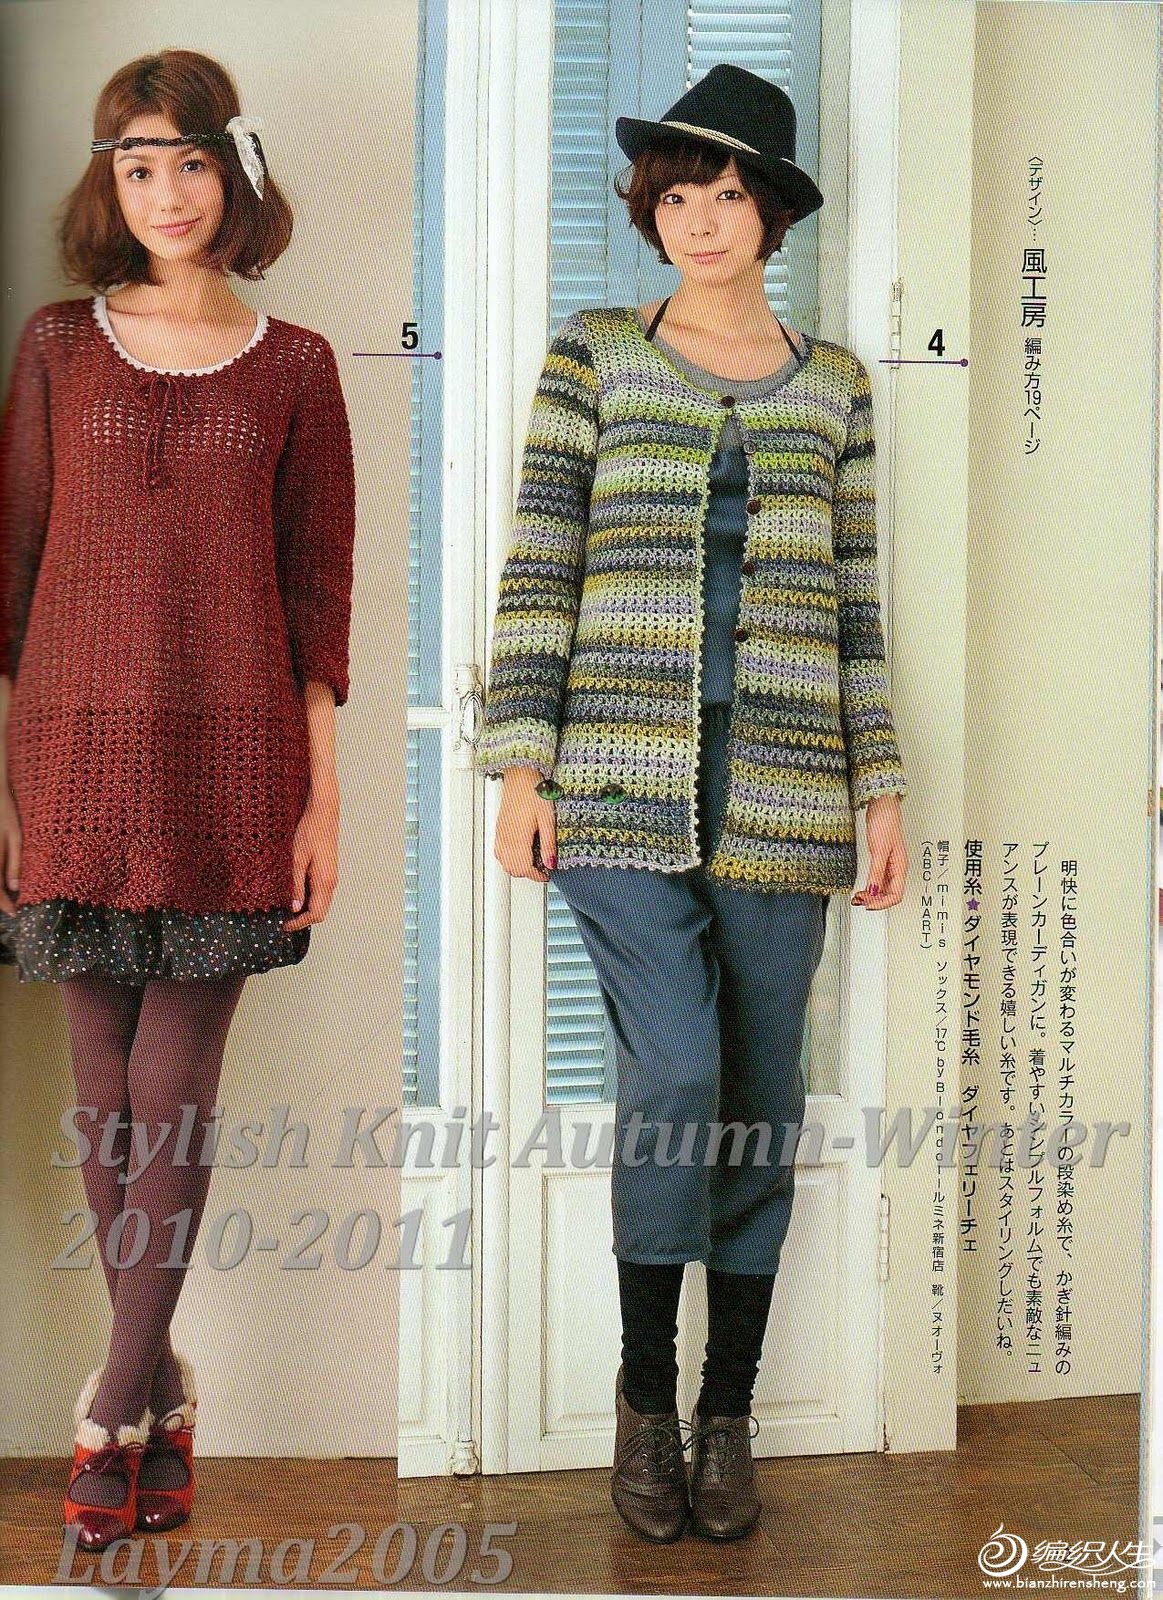 Stylish Knit Autumn-Winter 2010-2011011.jpg